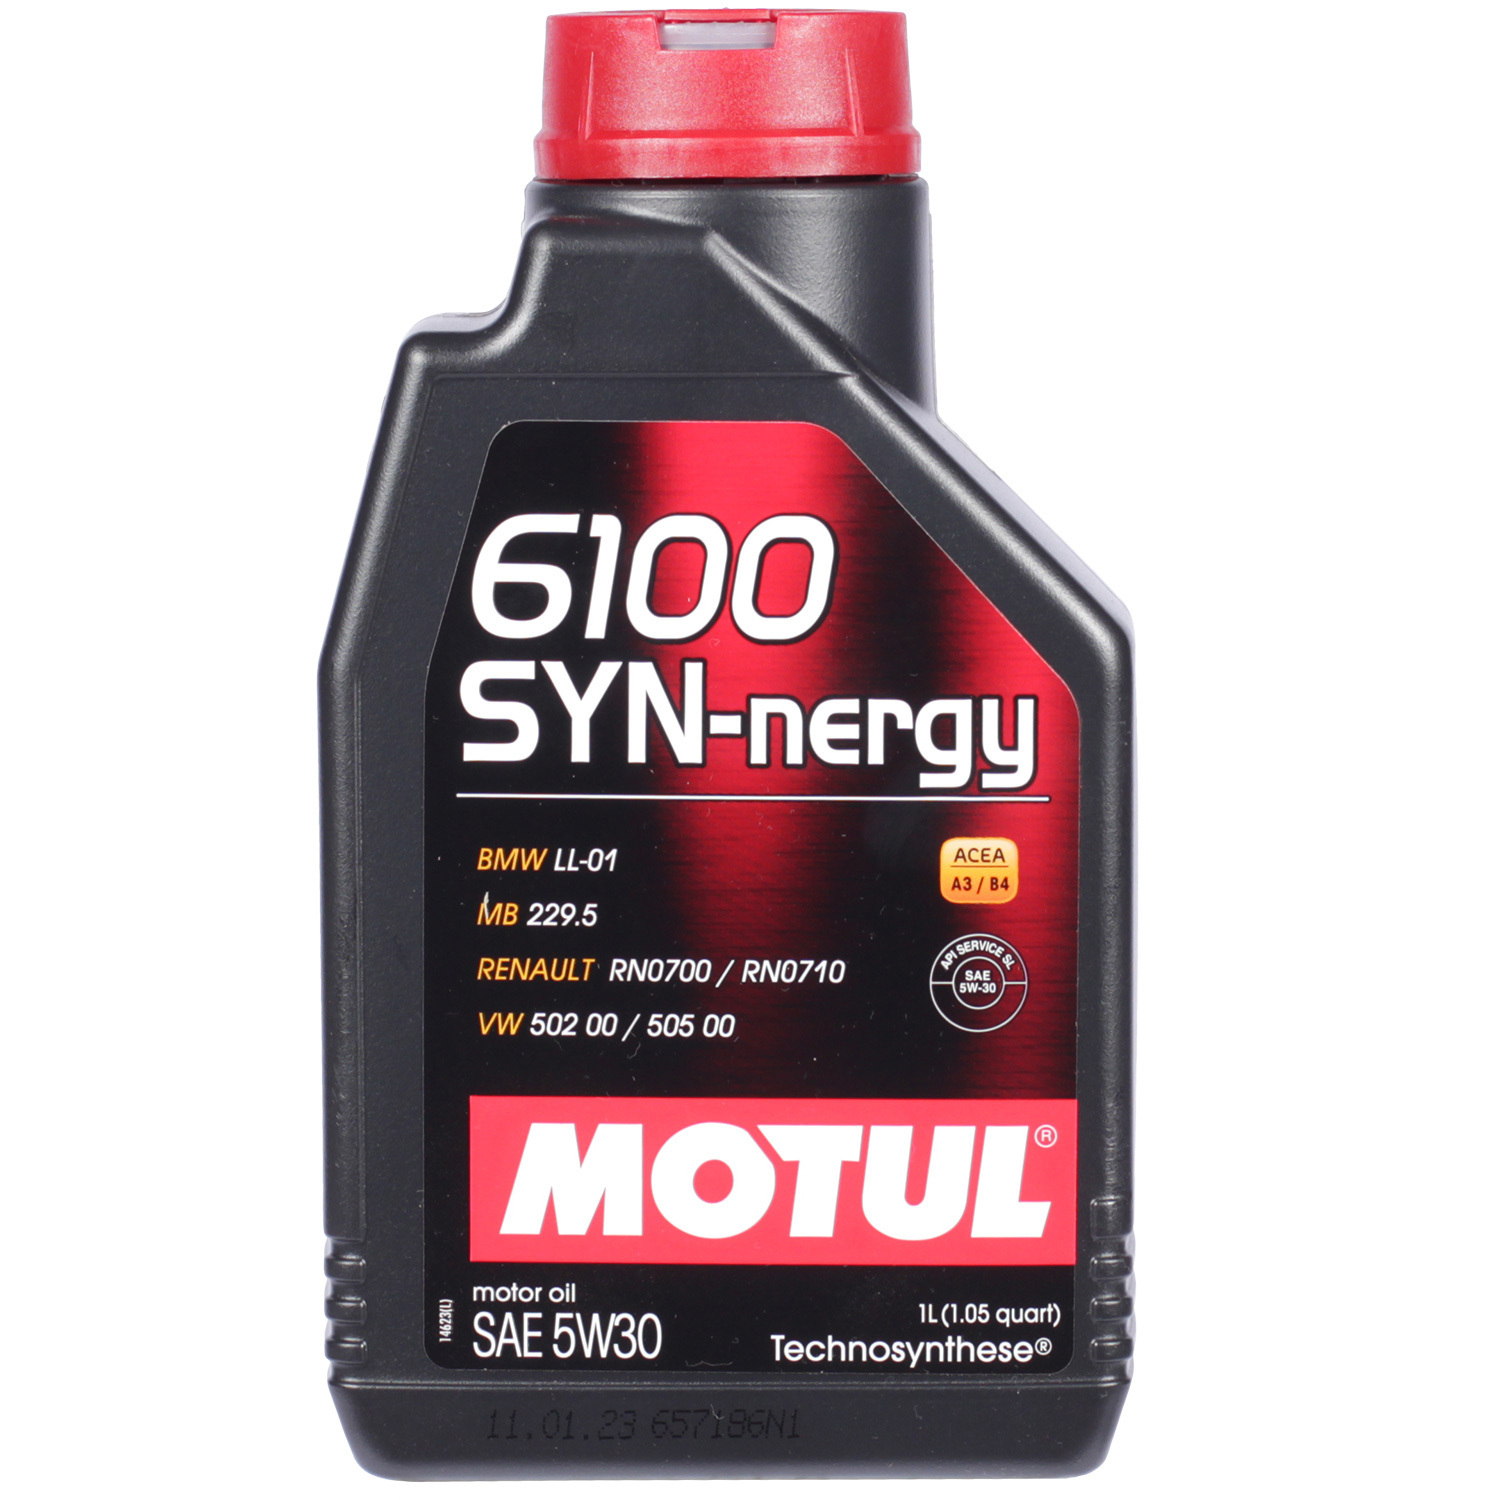 Motul Моторное масло Motul 6100 SYN-NERGY 5W-30, 1 л motul моторное масло motul 6100 syn clean 5w 30 5 л